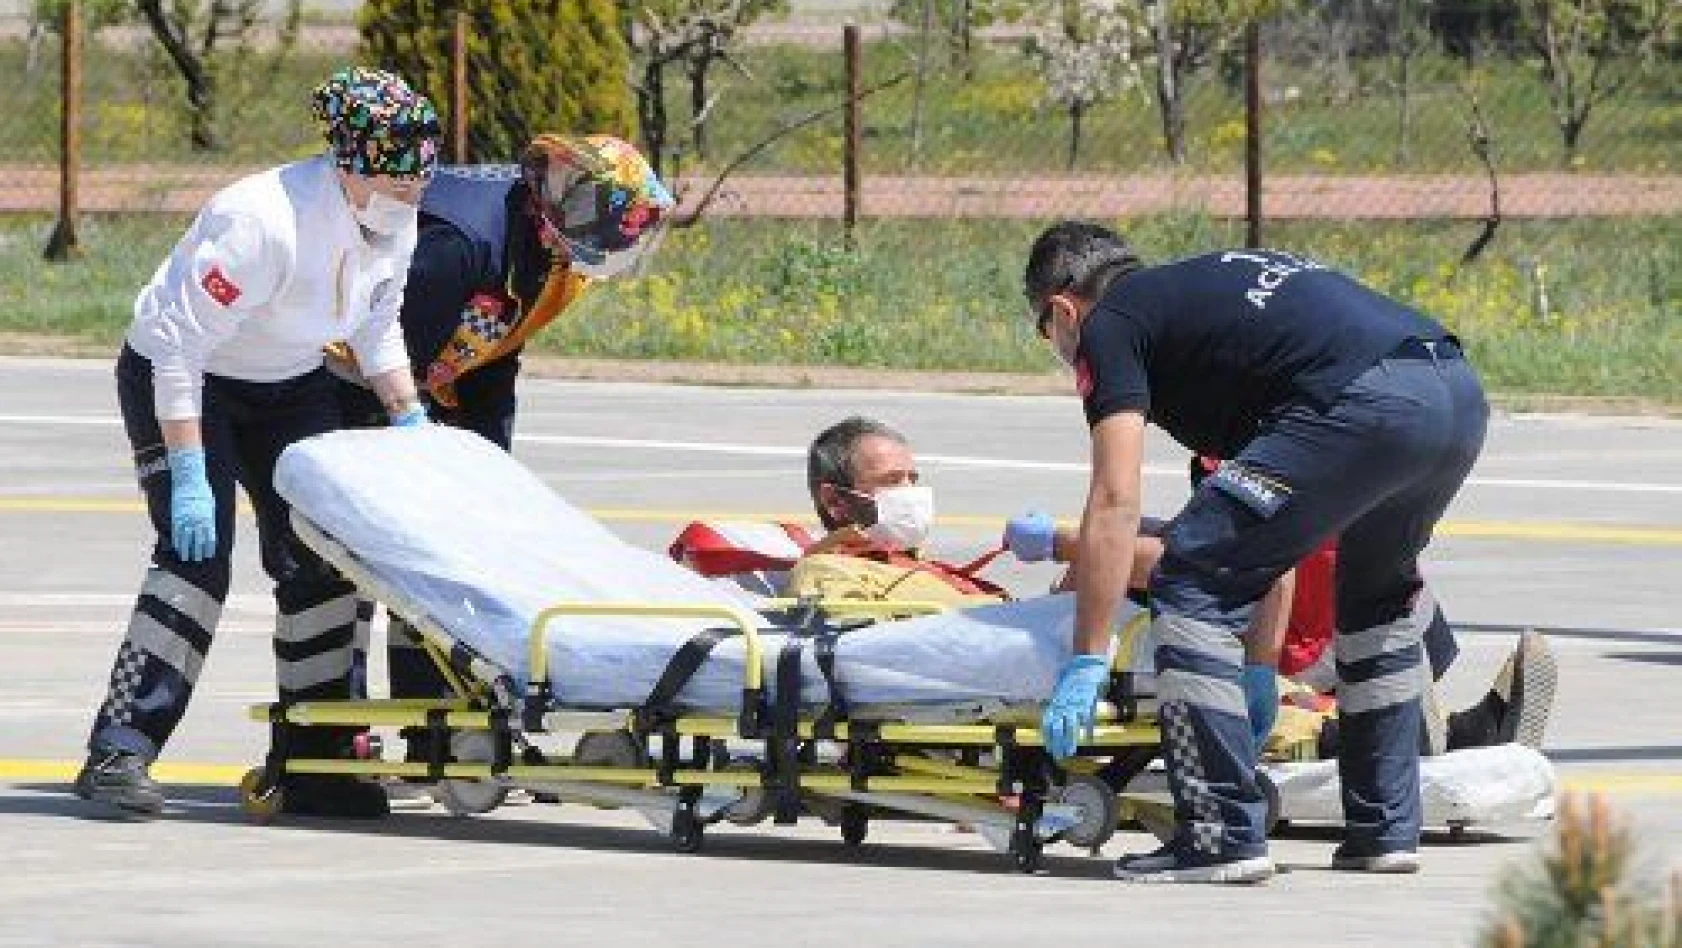 Hızarla kolunu kesti, ambulans helikopterle hastaneye götürüldü